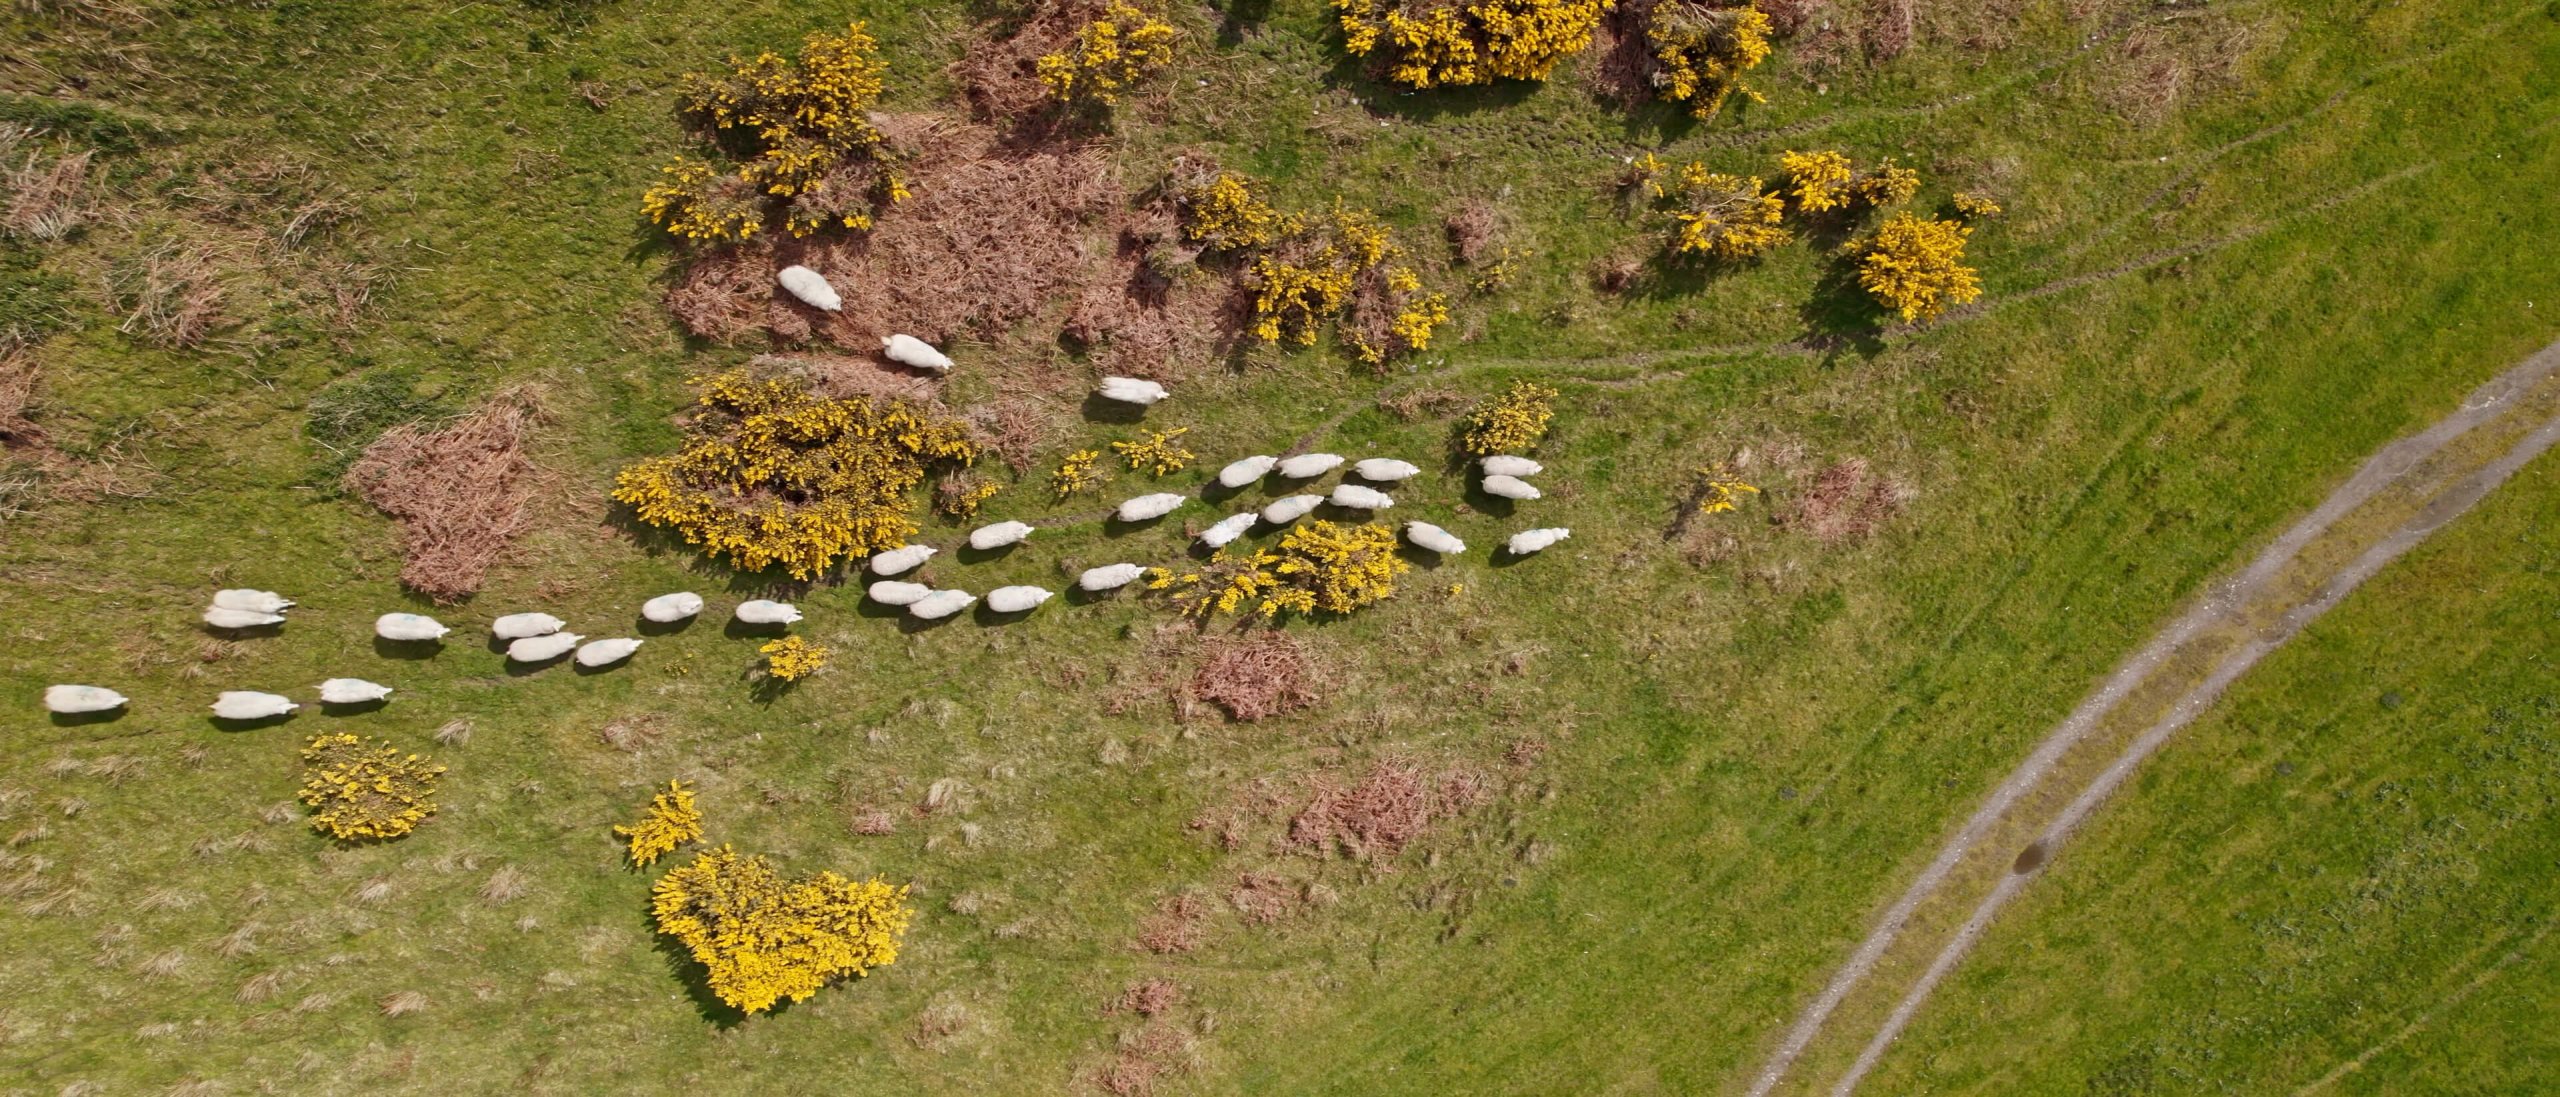 a herd of sheep running through a field